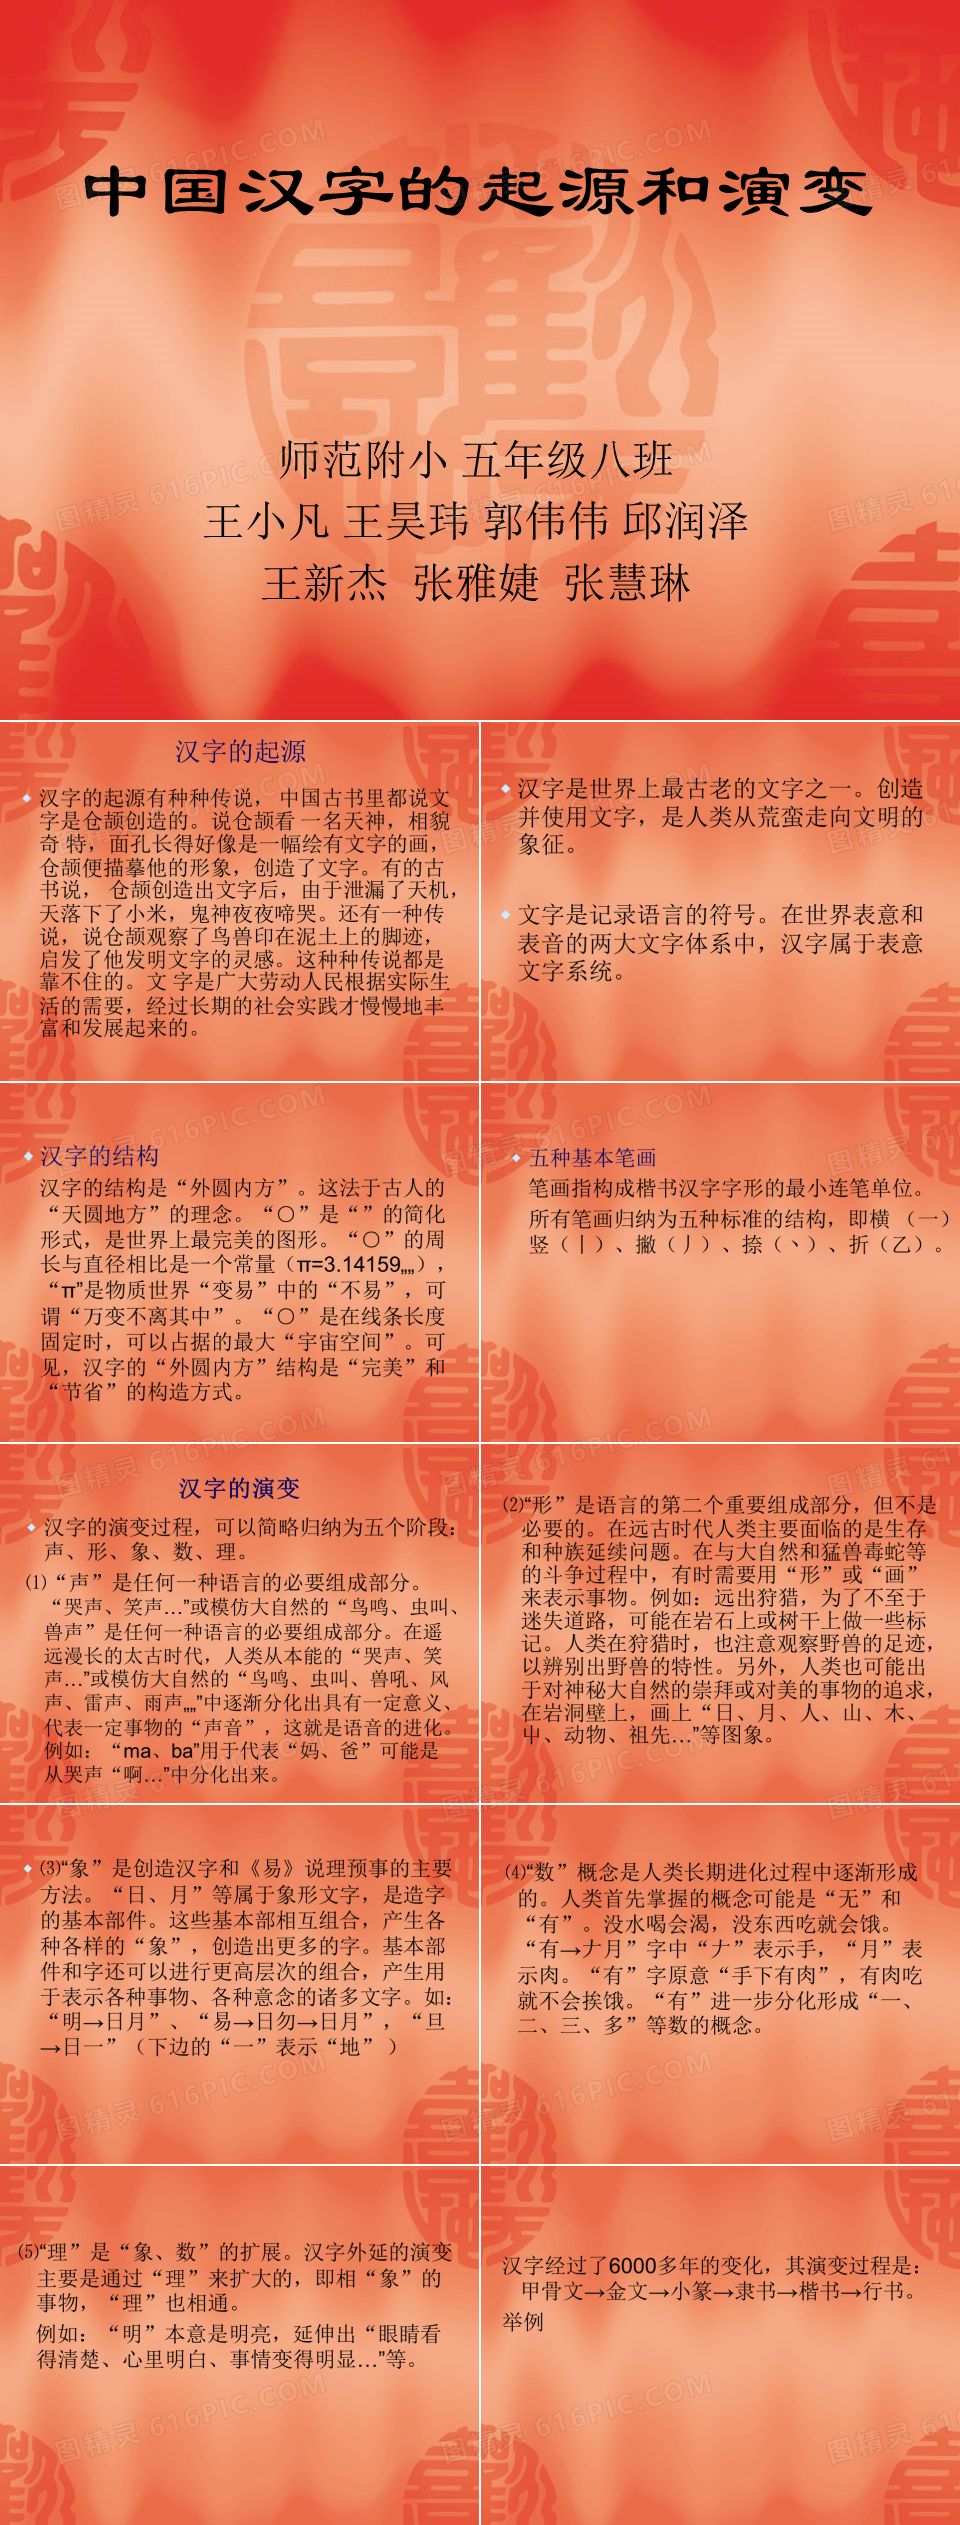 中国汉字的起源和演变